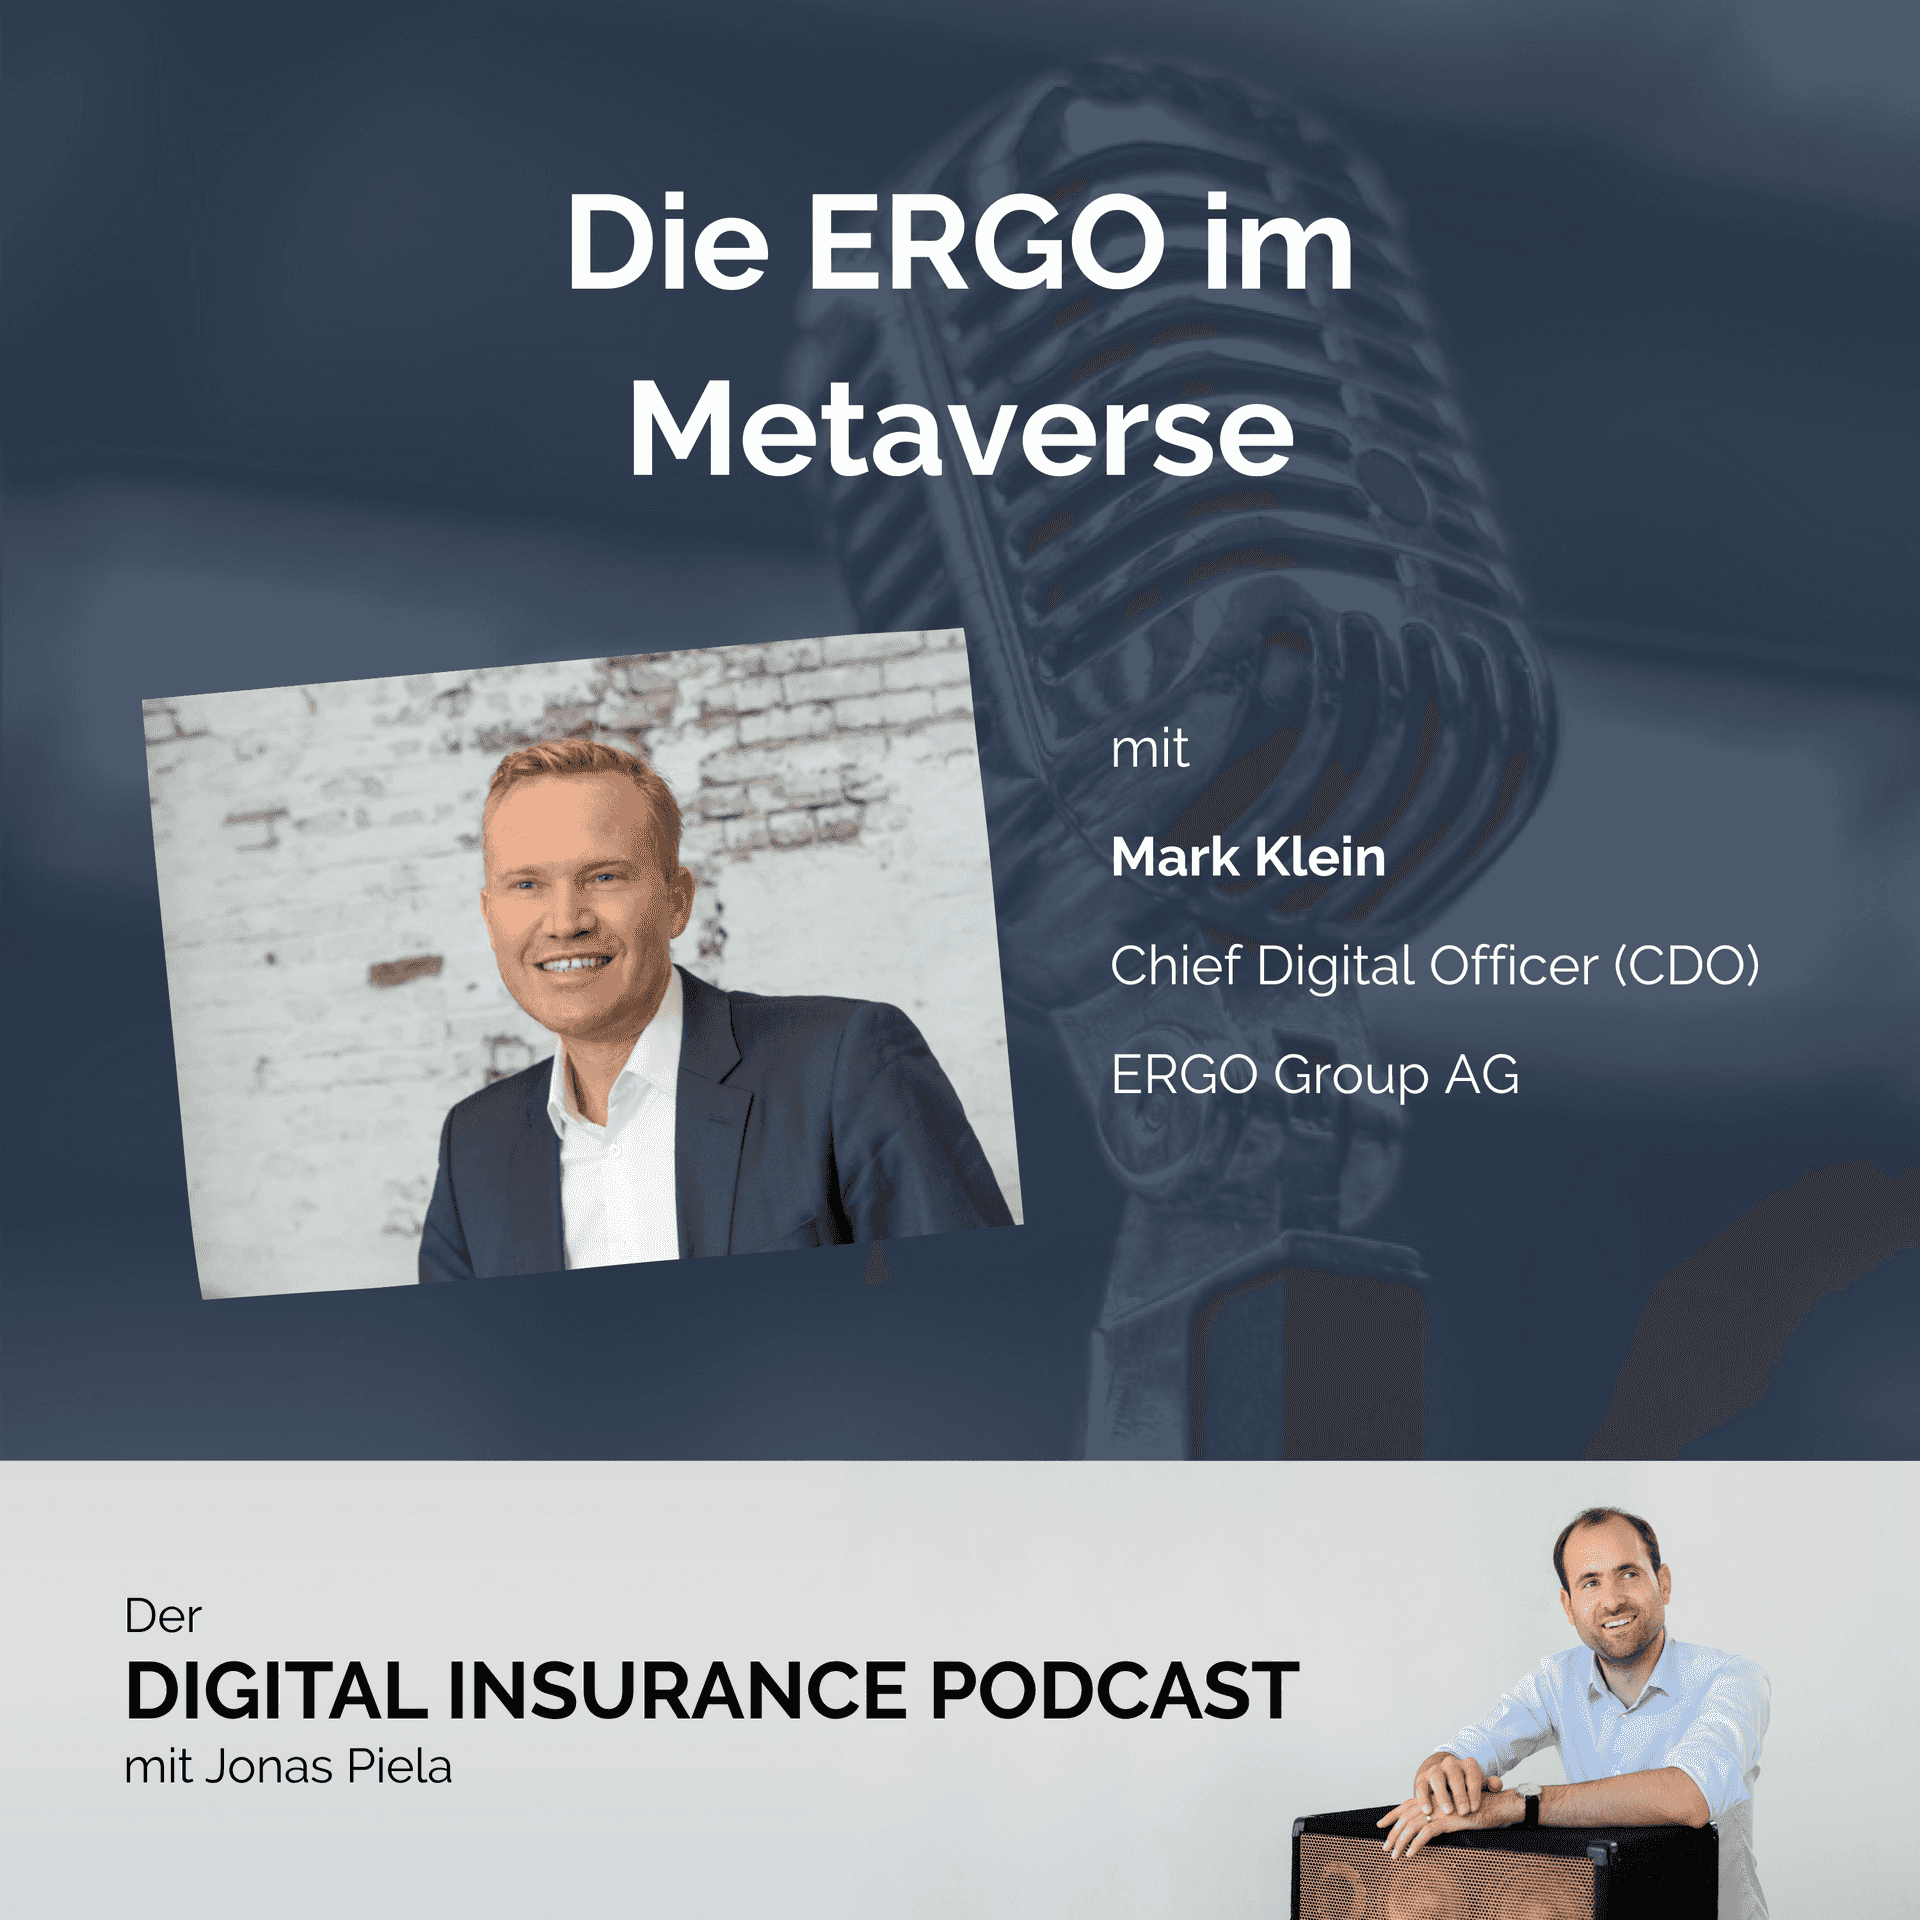 Mark Klein und die ERGO im Metaverse